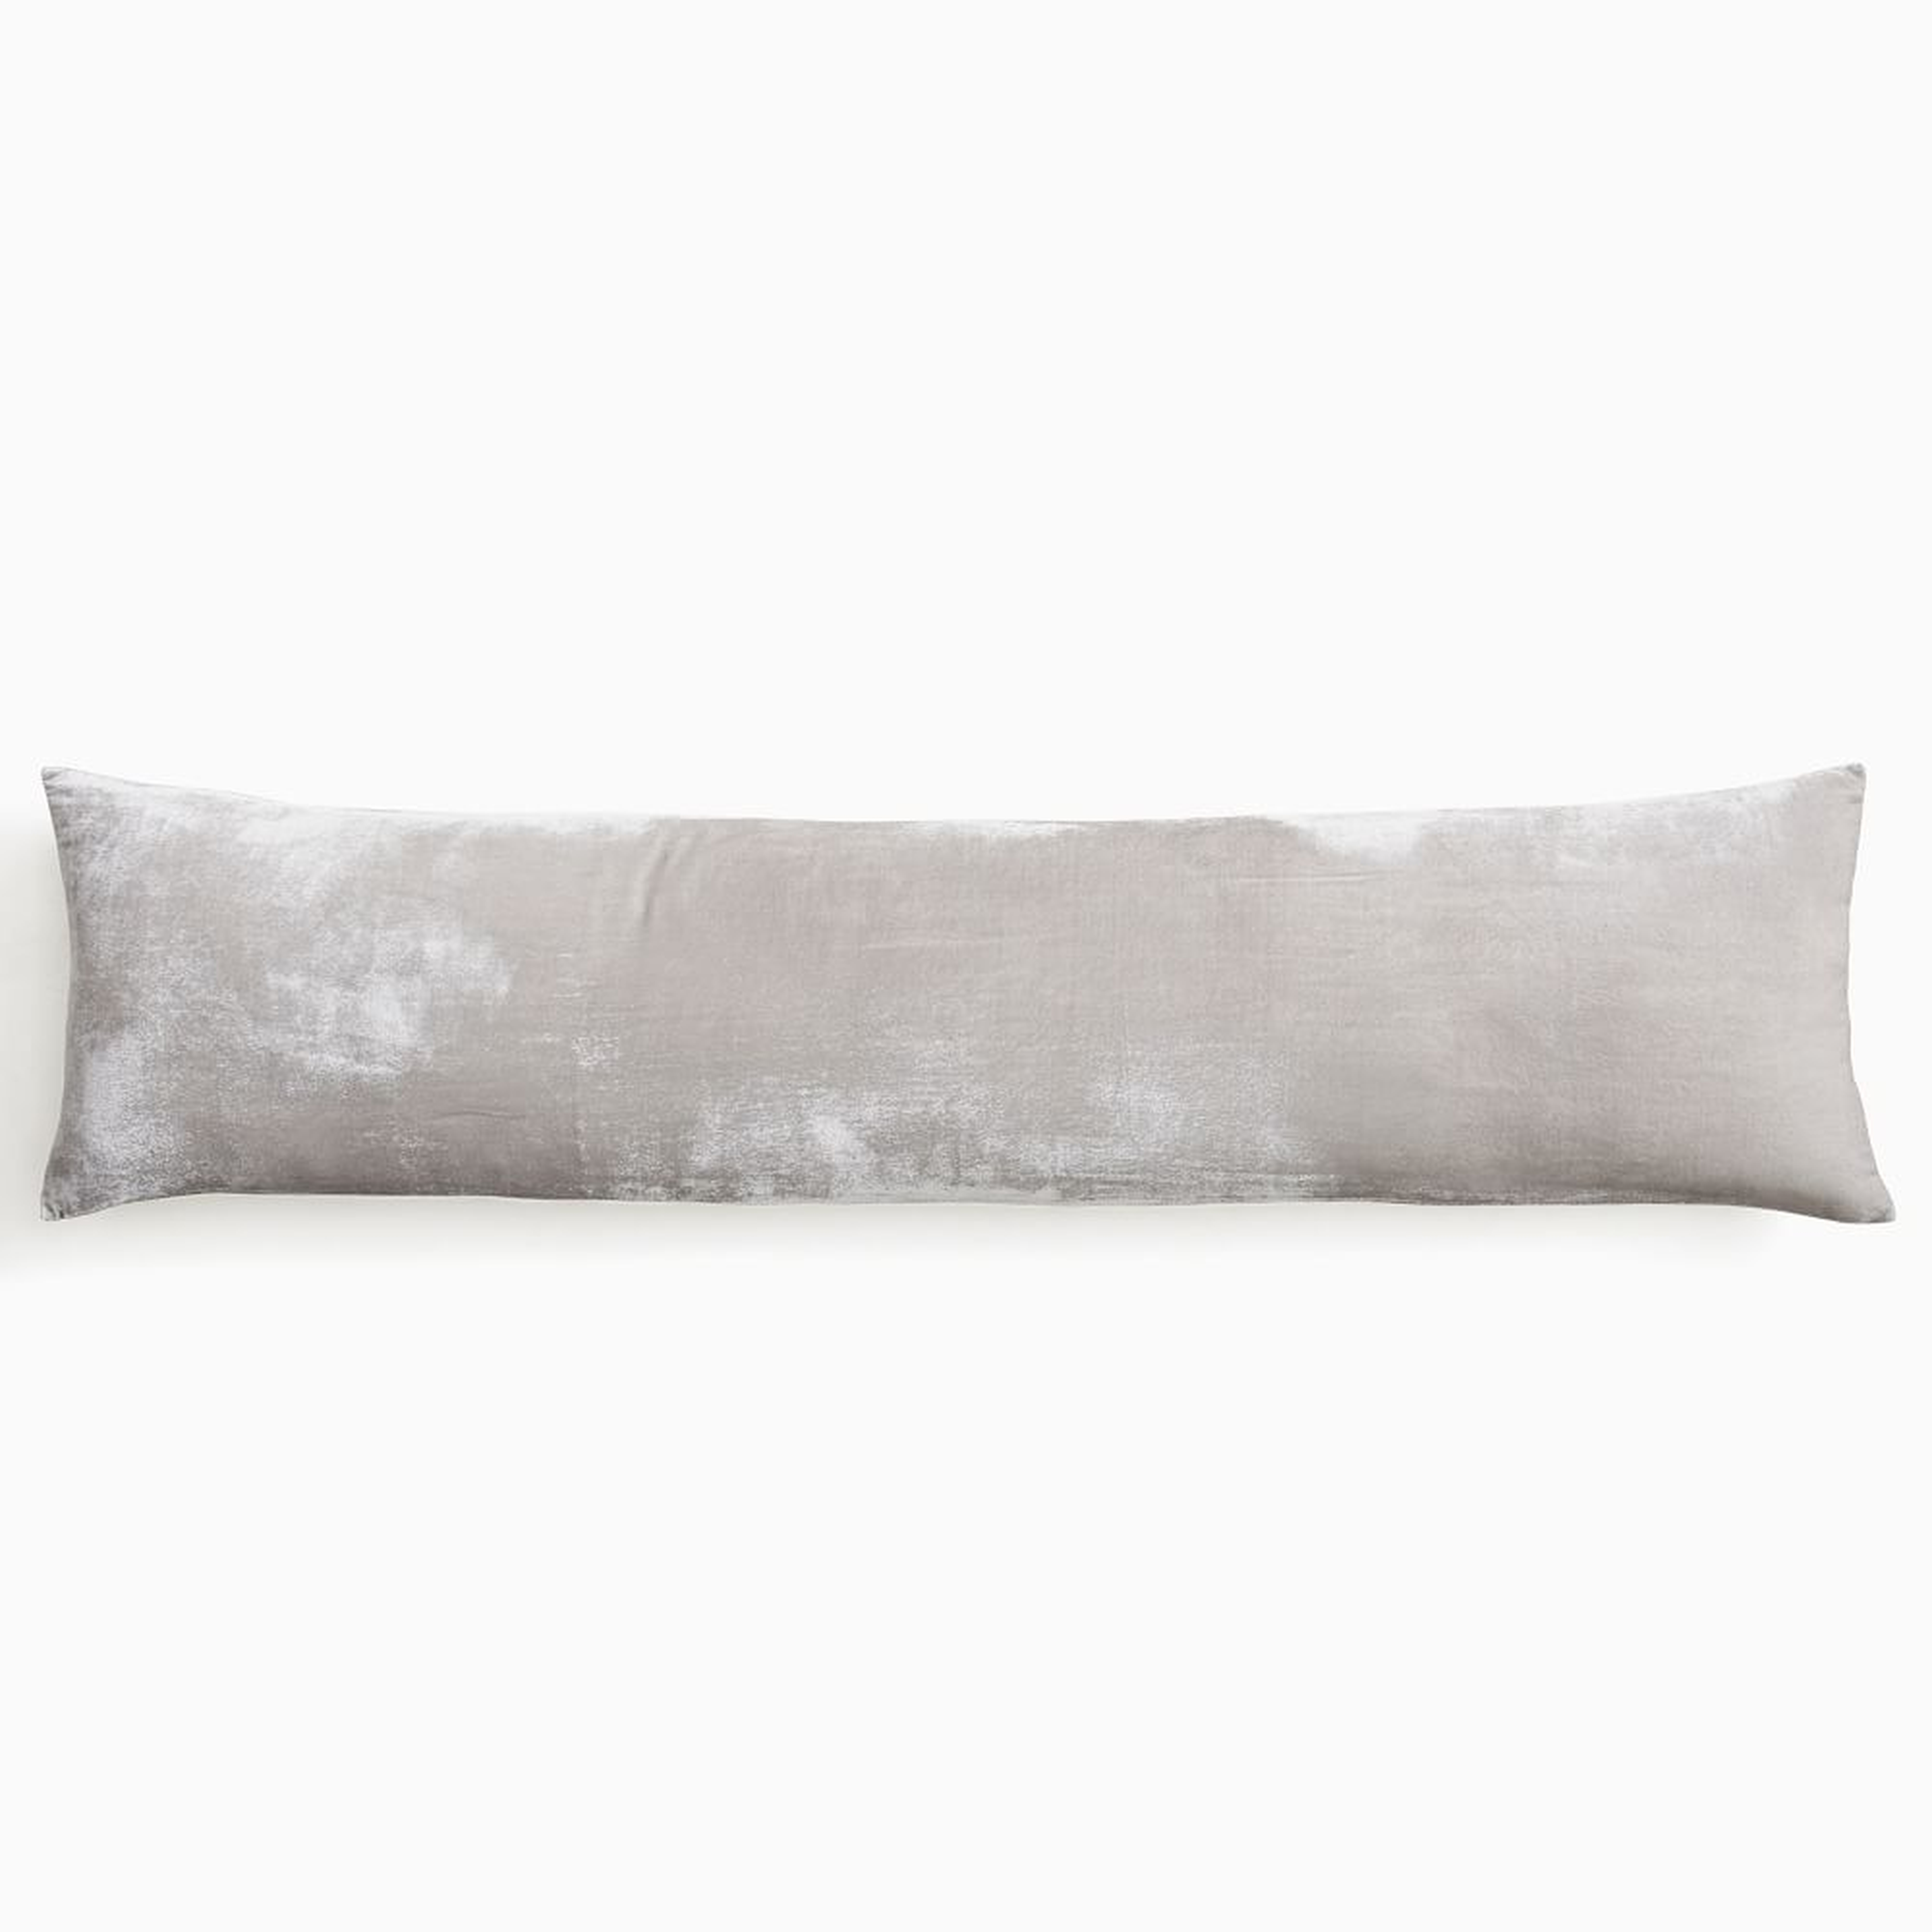 Lush Velvet Pillow Cover, 12"x46", Pearl Gray - West Elm